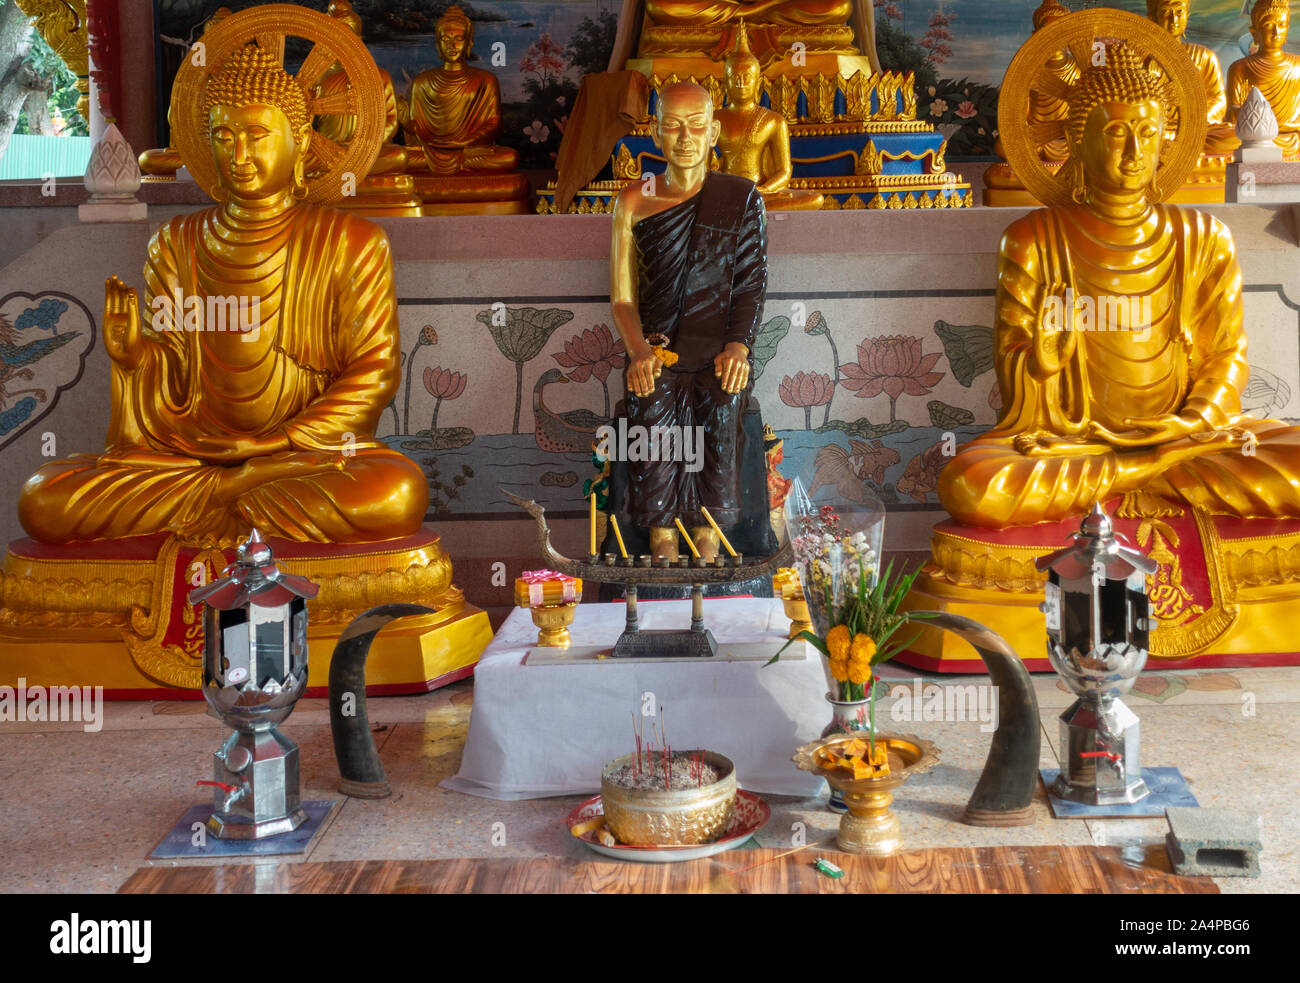 Bang Saen, Tailandia - 16 Marzo 2019: Wang Saensuk monastero buddista. Primo piano della centrale di statue dorate, fondatore affiancato da 2 golden Buddha in m Foto Stock